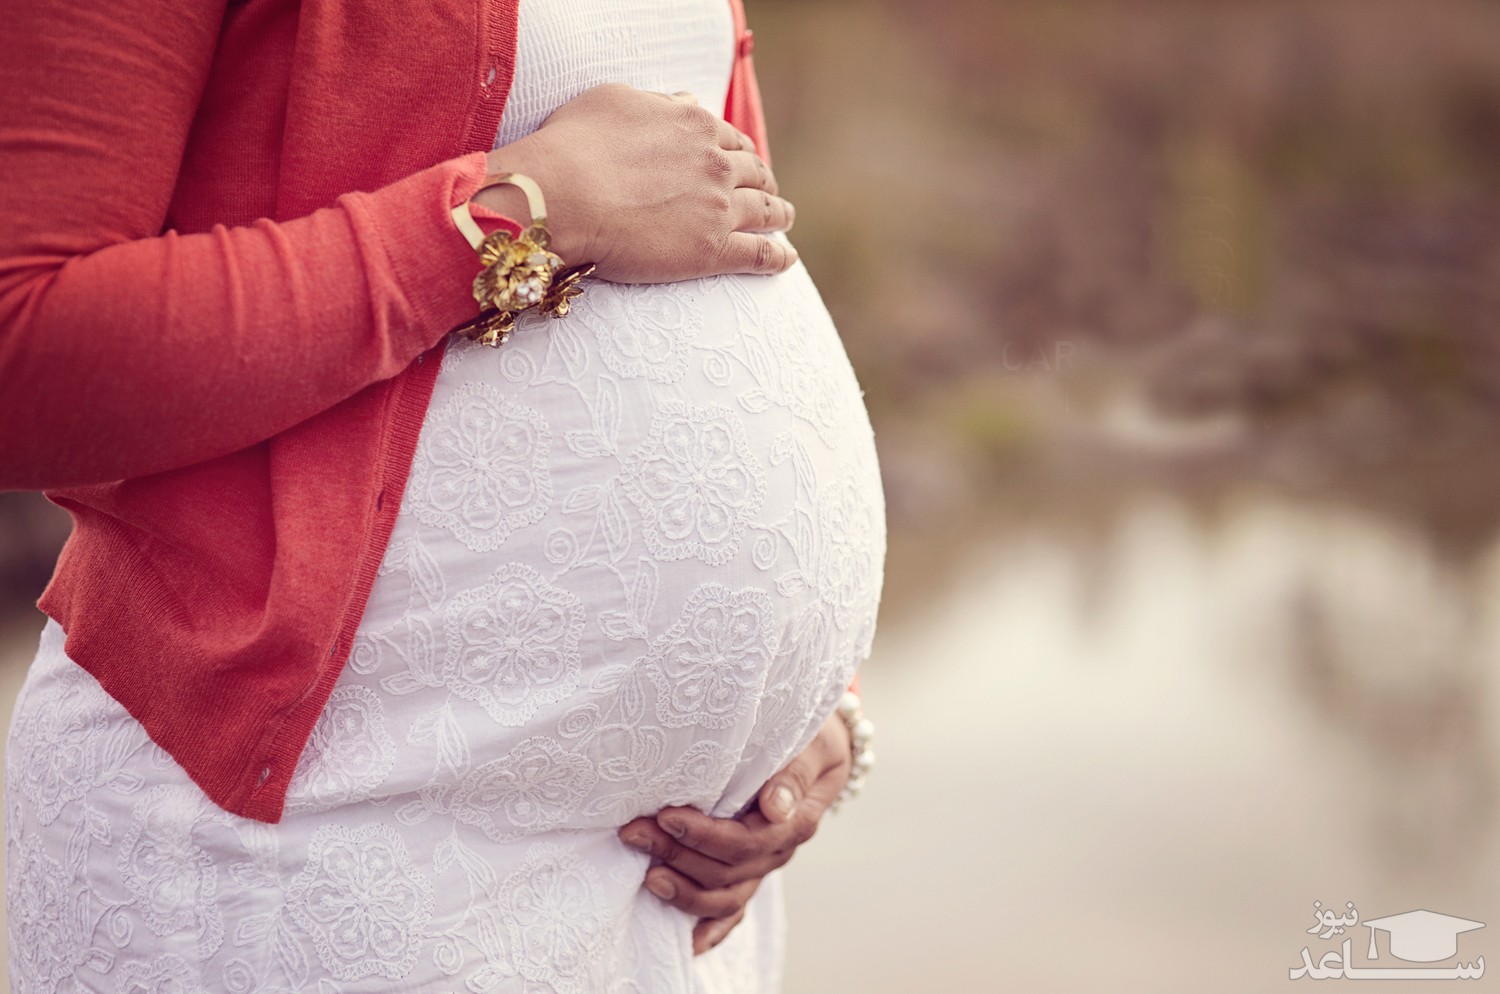 خطرات و عوارض بیماری سرخچه در بارداری